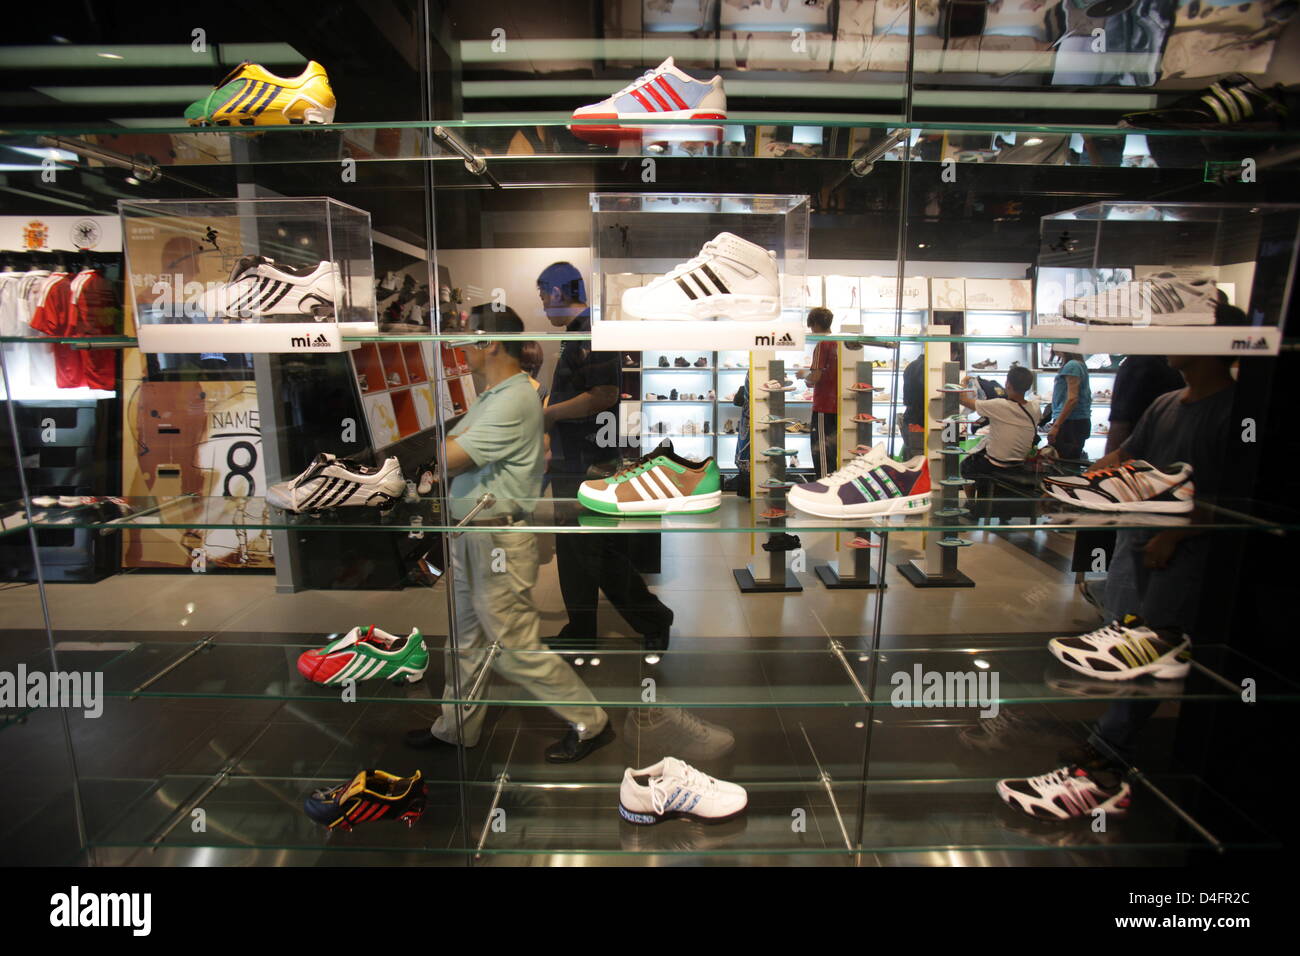 Una vista interior del nuevo "Centro" de la marca Adidas, hasta ahora la tienda adidas más grande del mundo, en Beijing, China, 19 de agosto de 2008. La tienda abarca 3,170m2